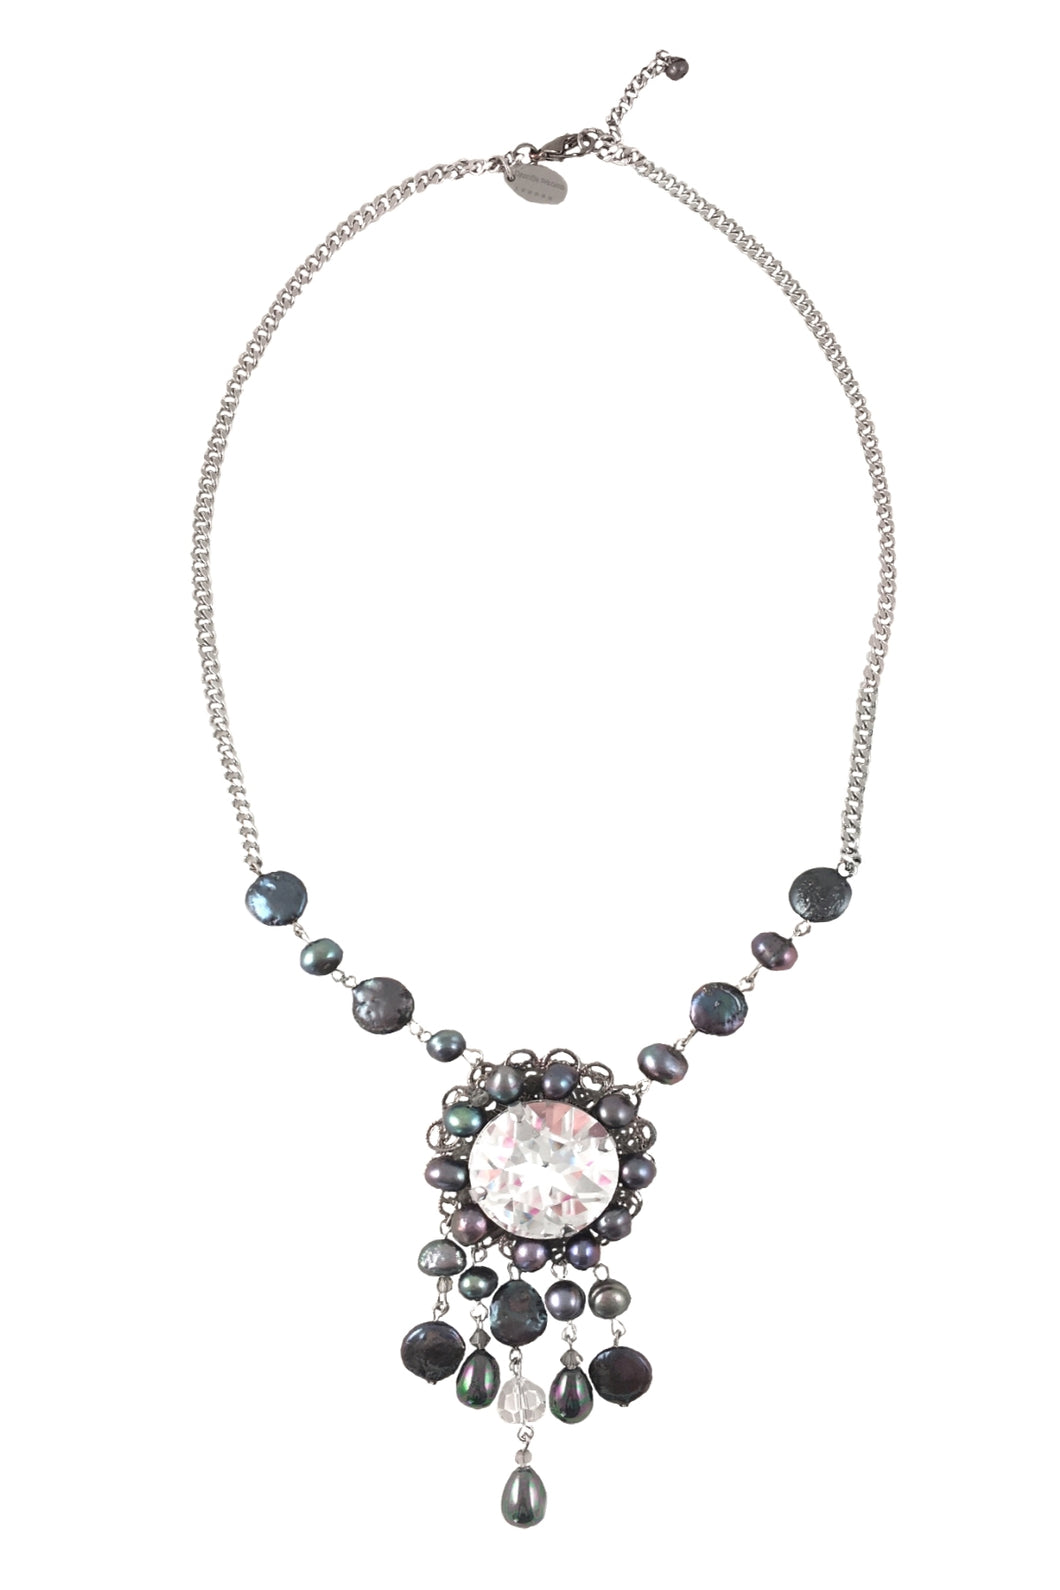 Baroque Pearls and Swarovski Crystals Necklace